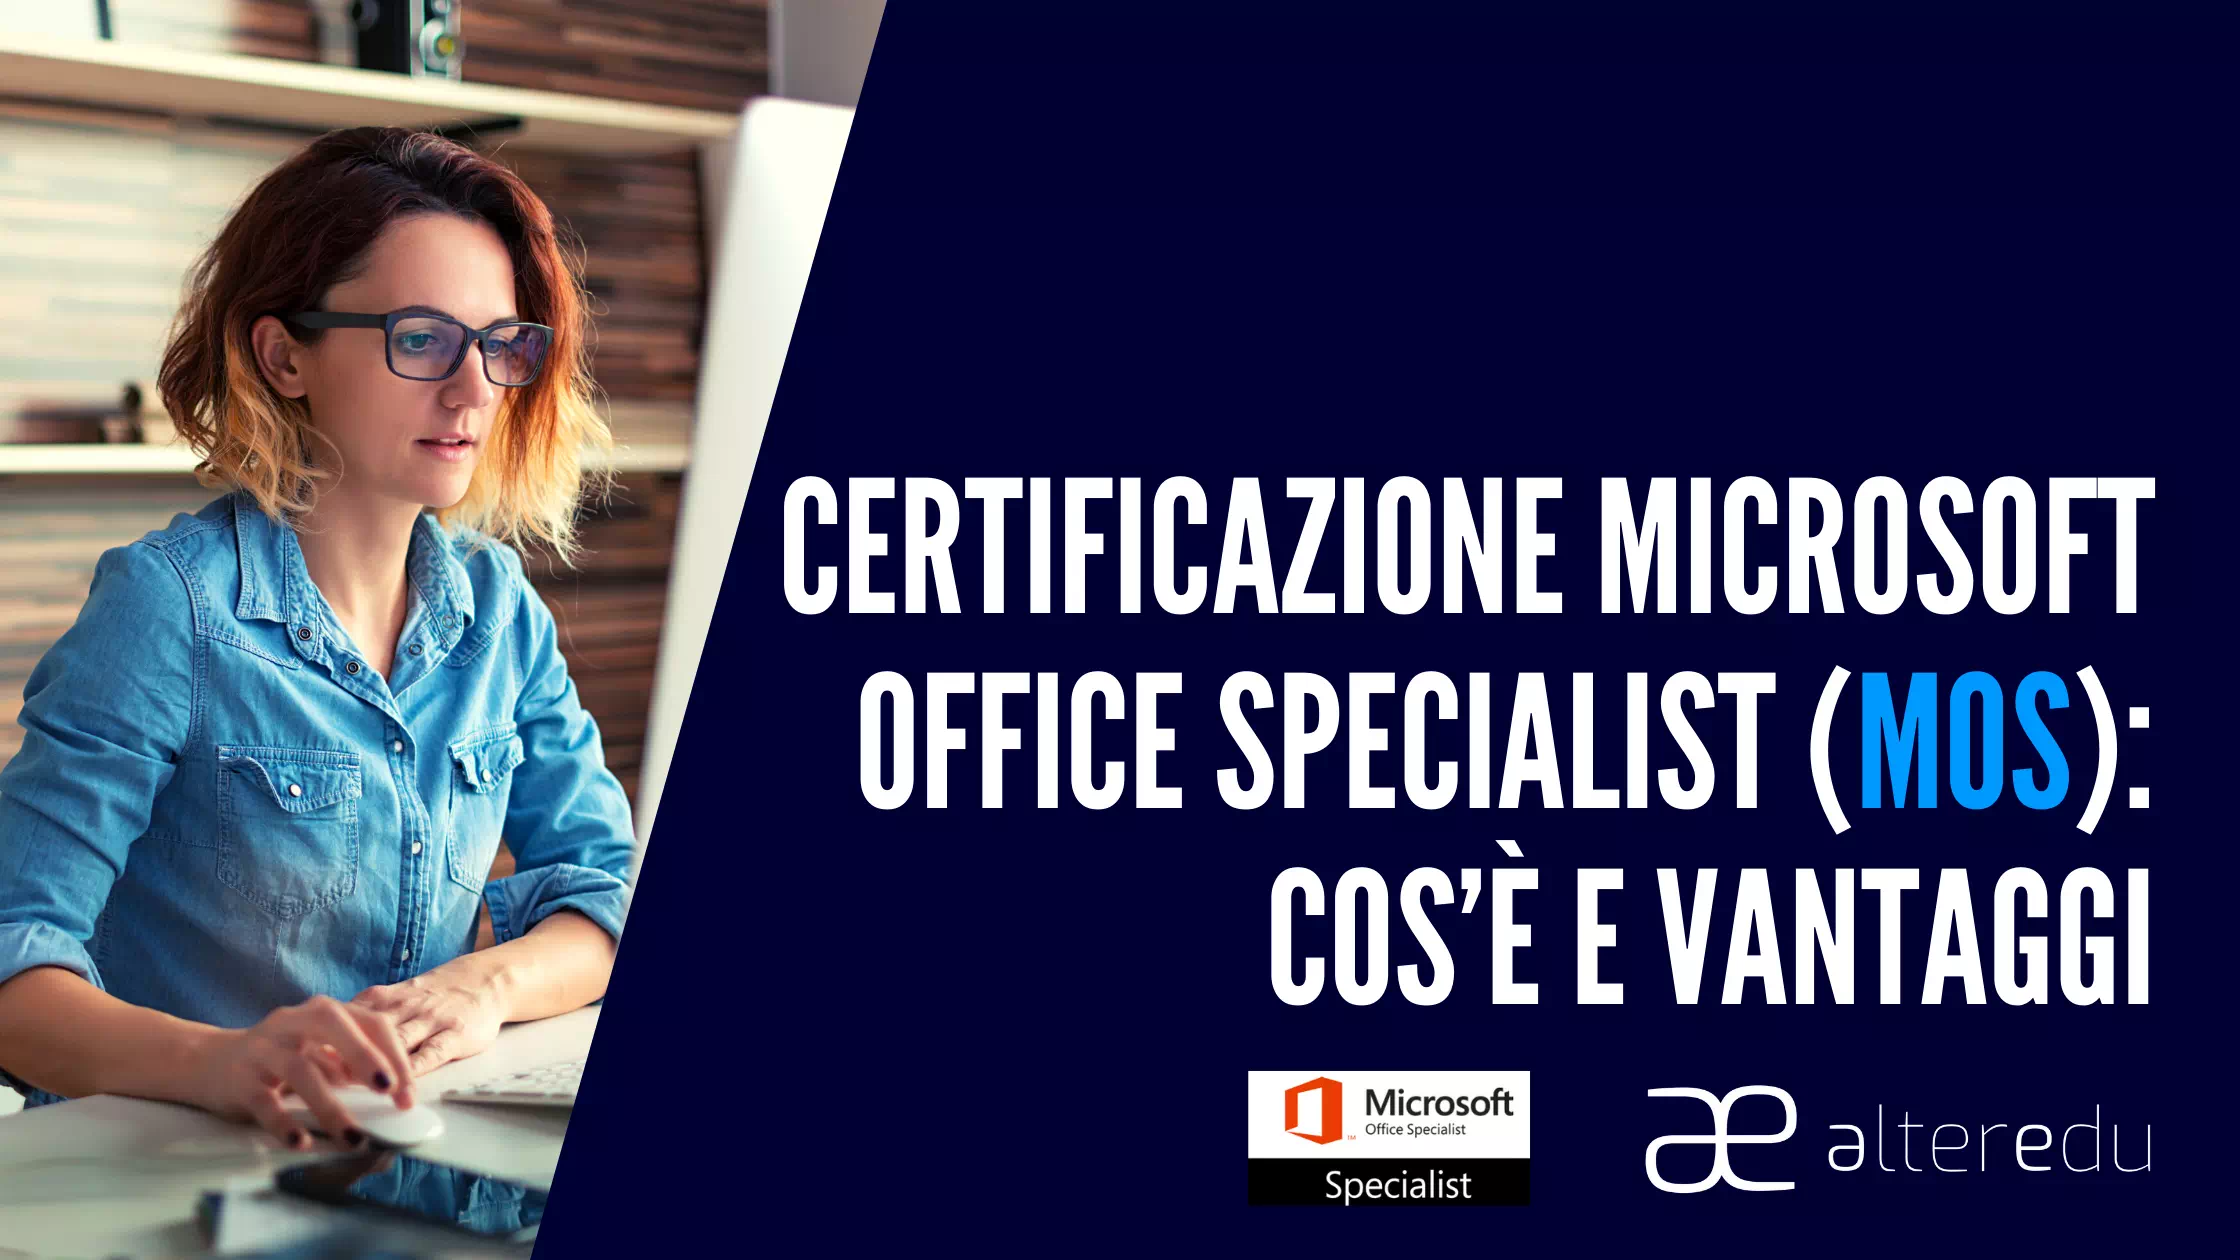  Certificazione Microsoft Office Specialist (MOS): Cos’è e Vantaggi